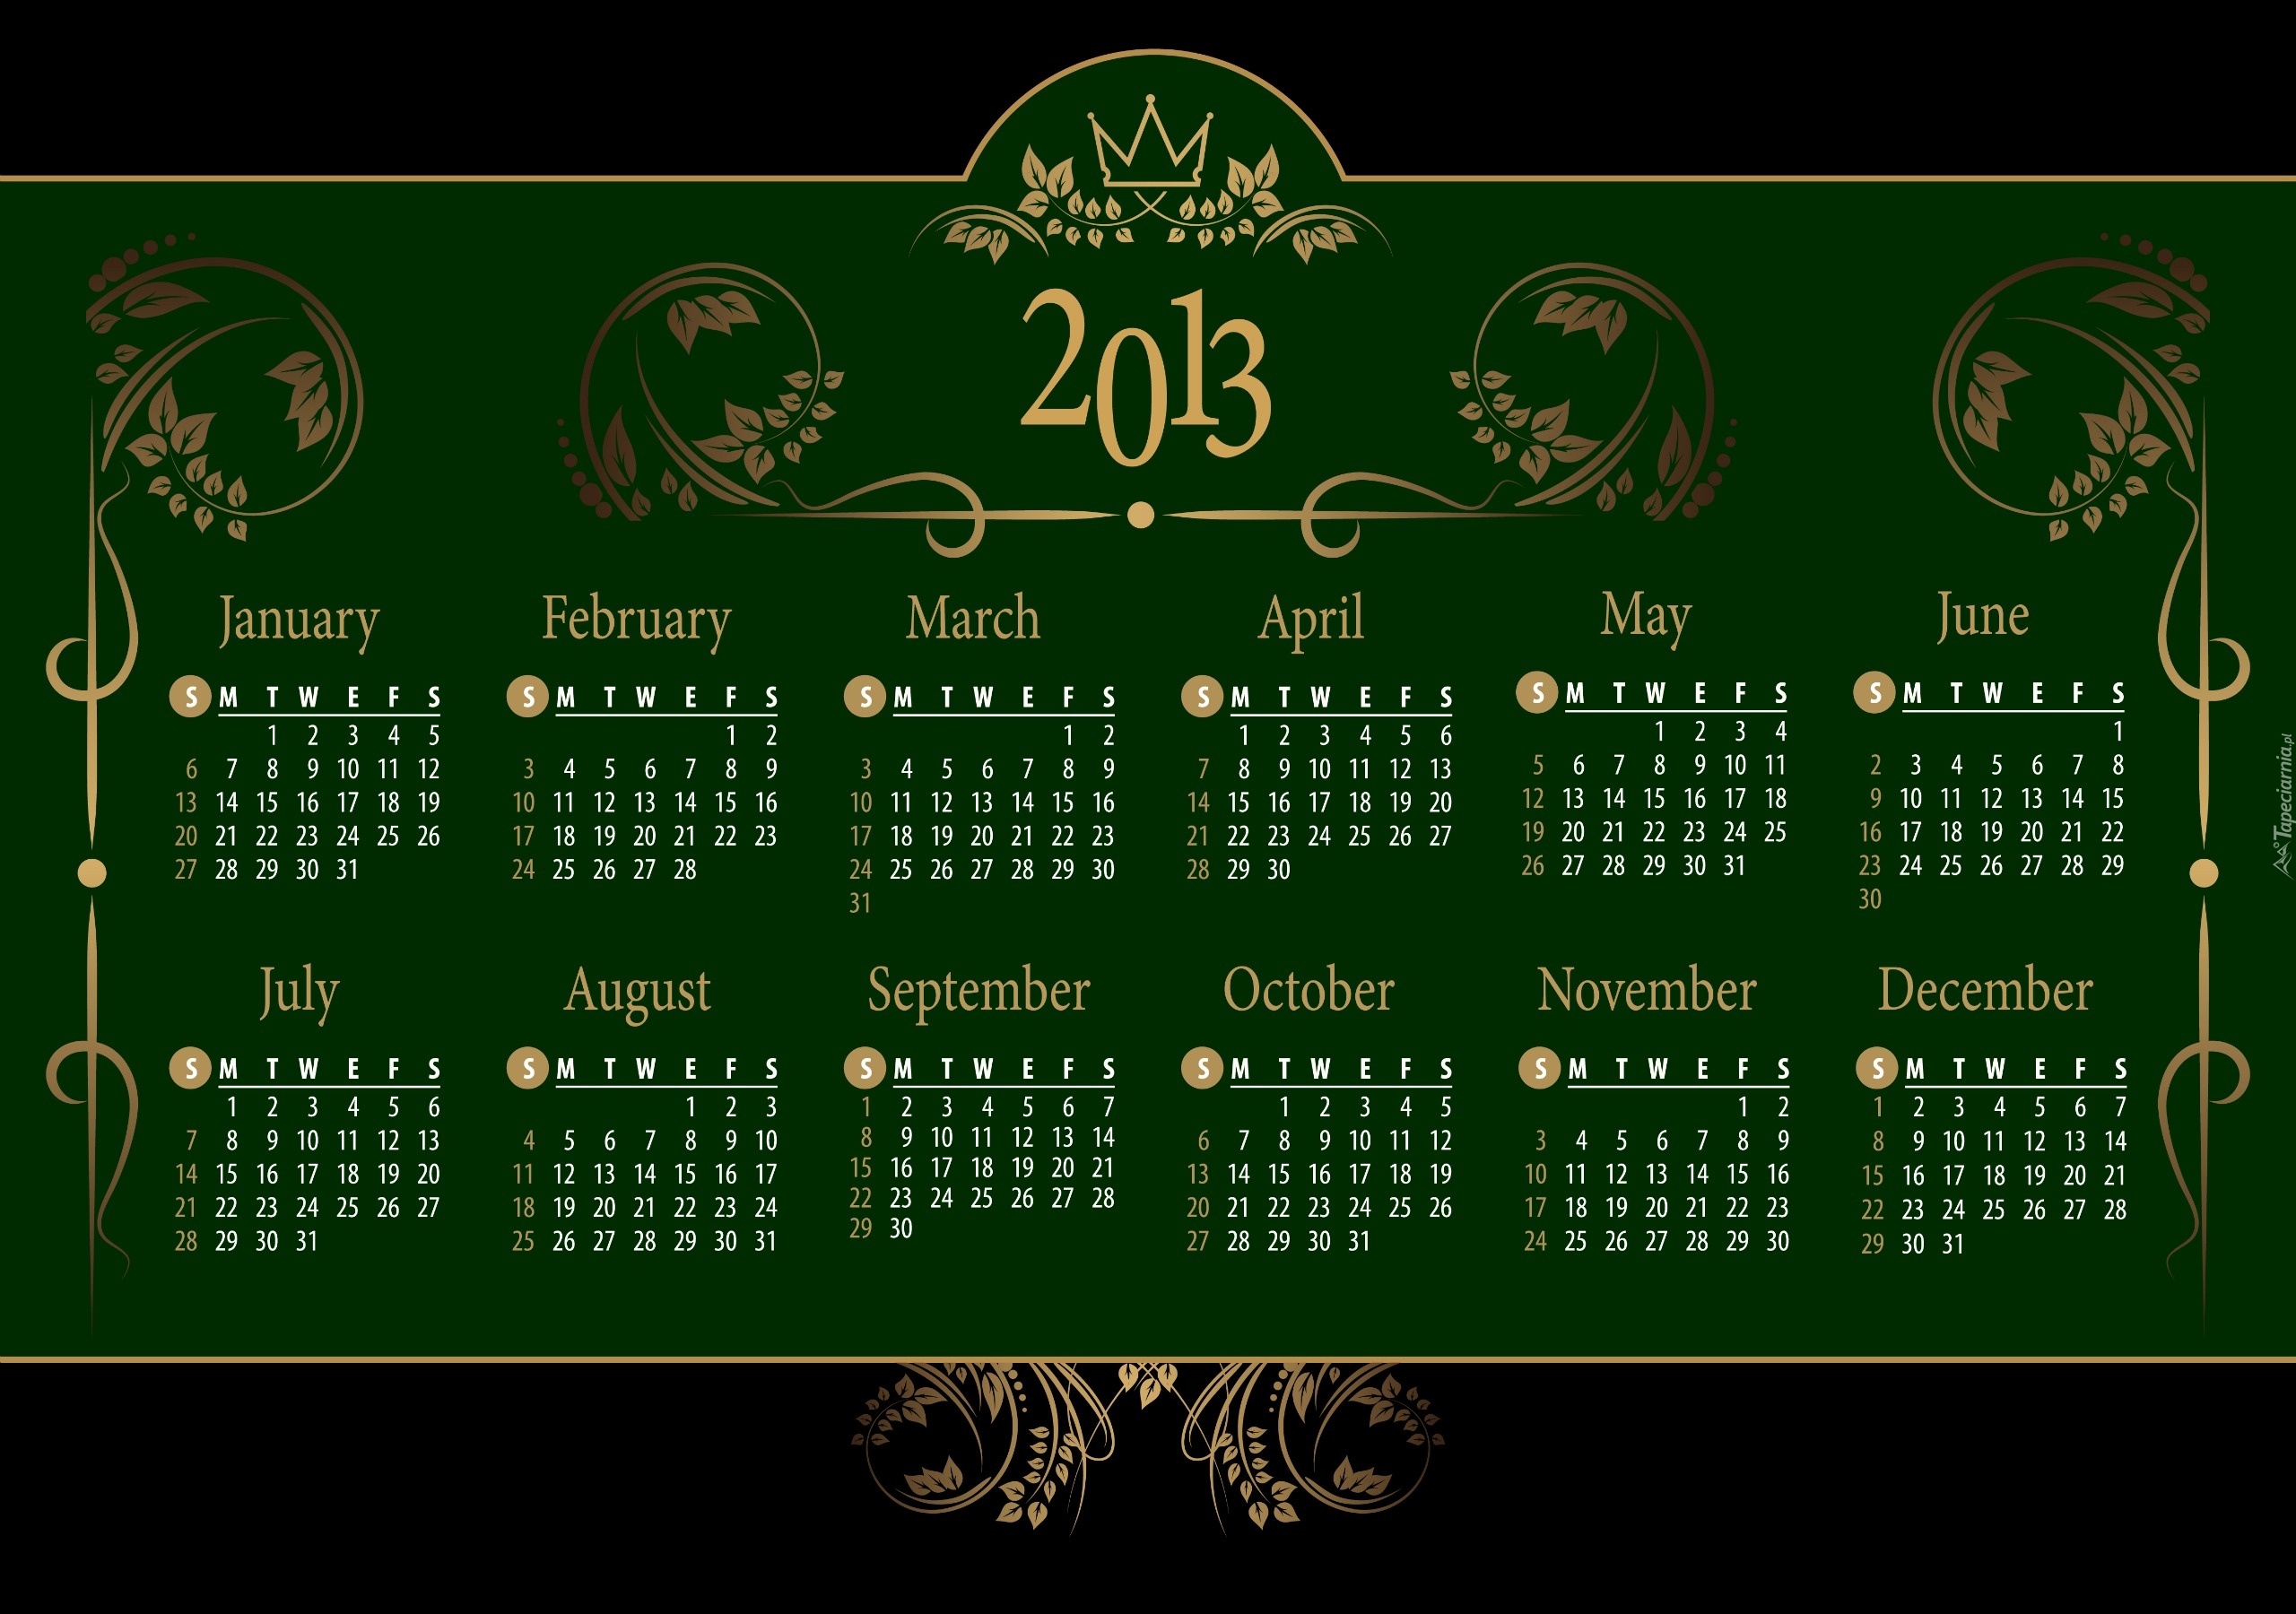 Kalendarz, 2013